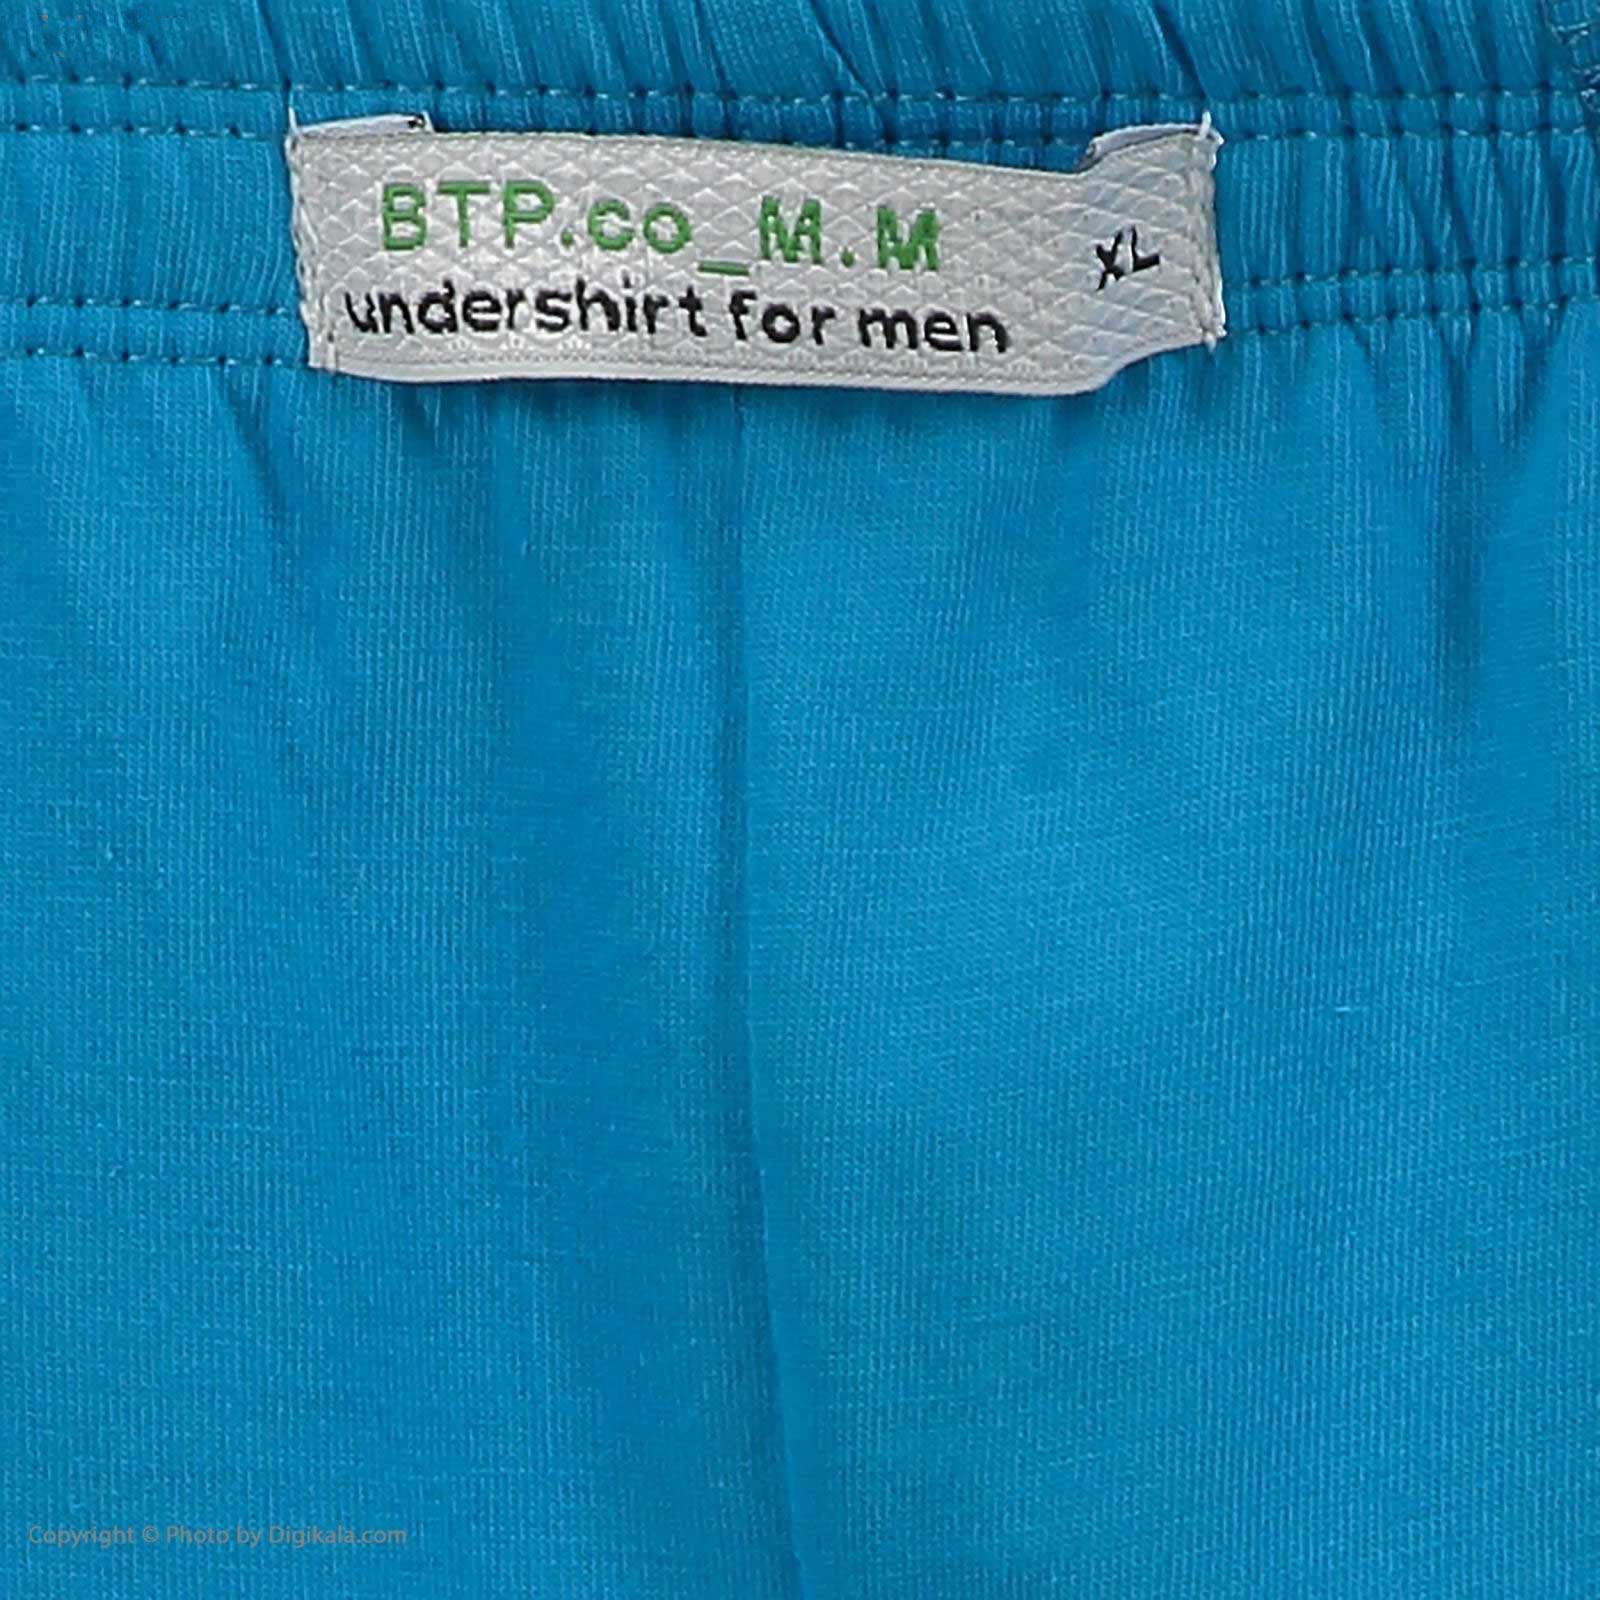 شورت مردانه برهان تن پوش مدل 3-4-04 بسته 2 عددی -  - 7